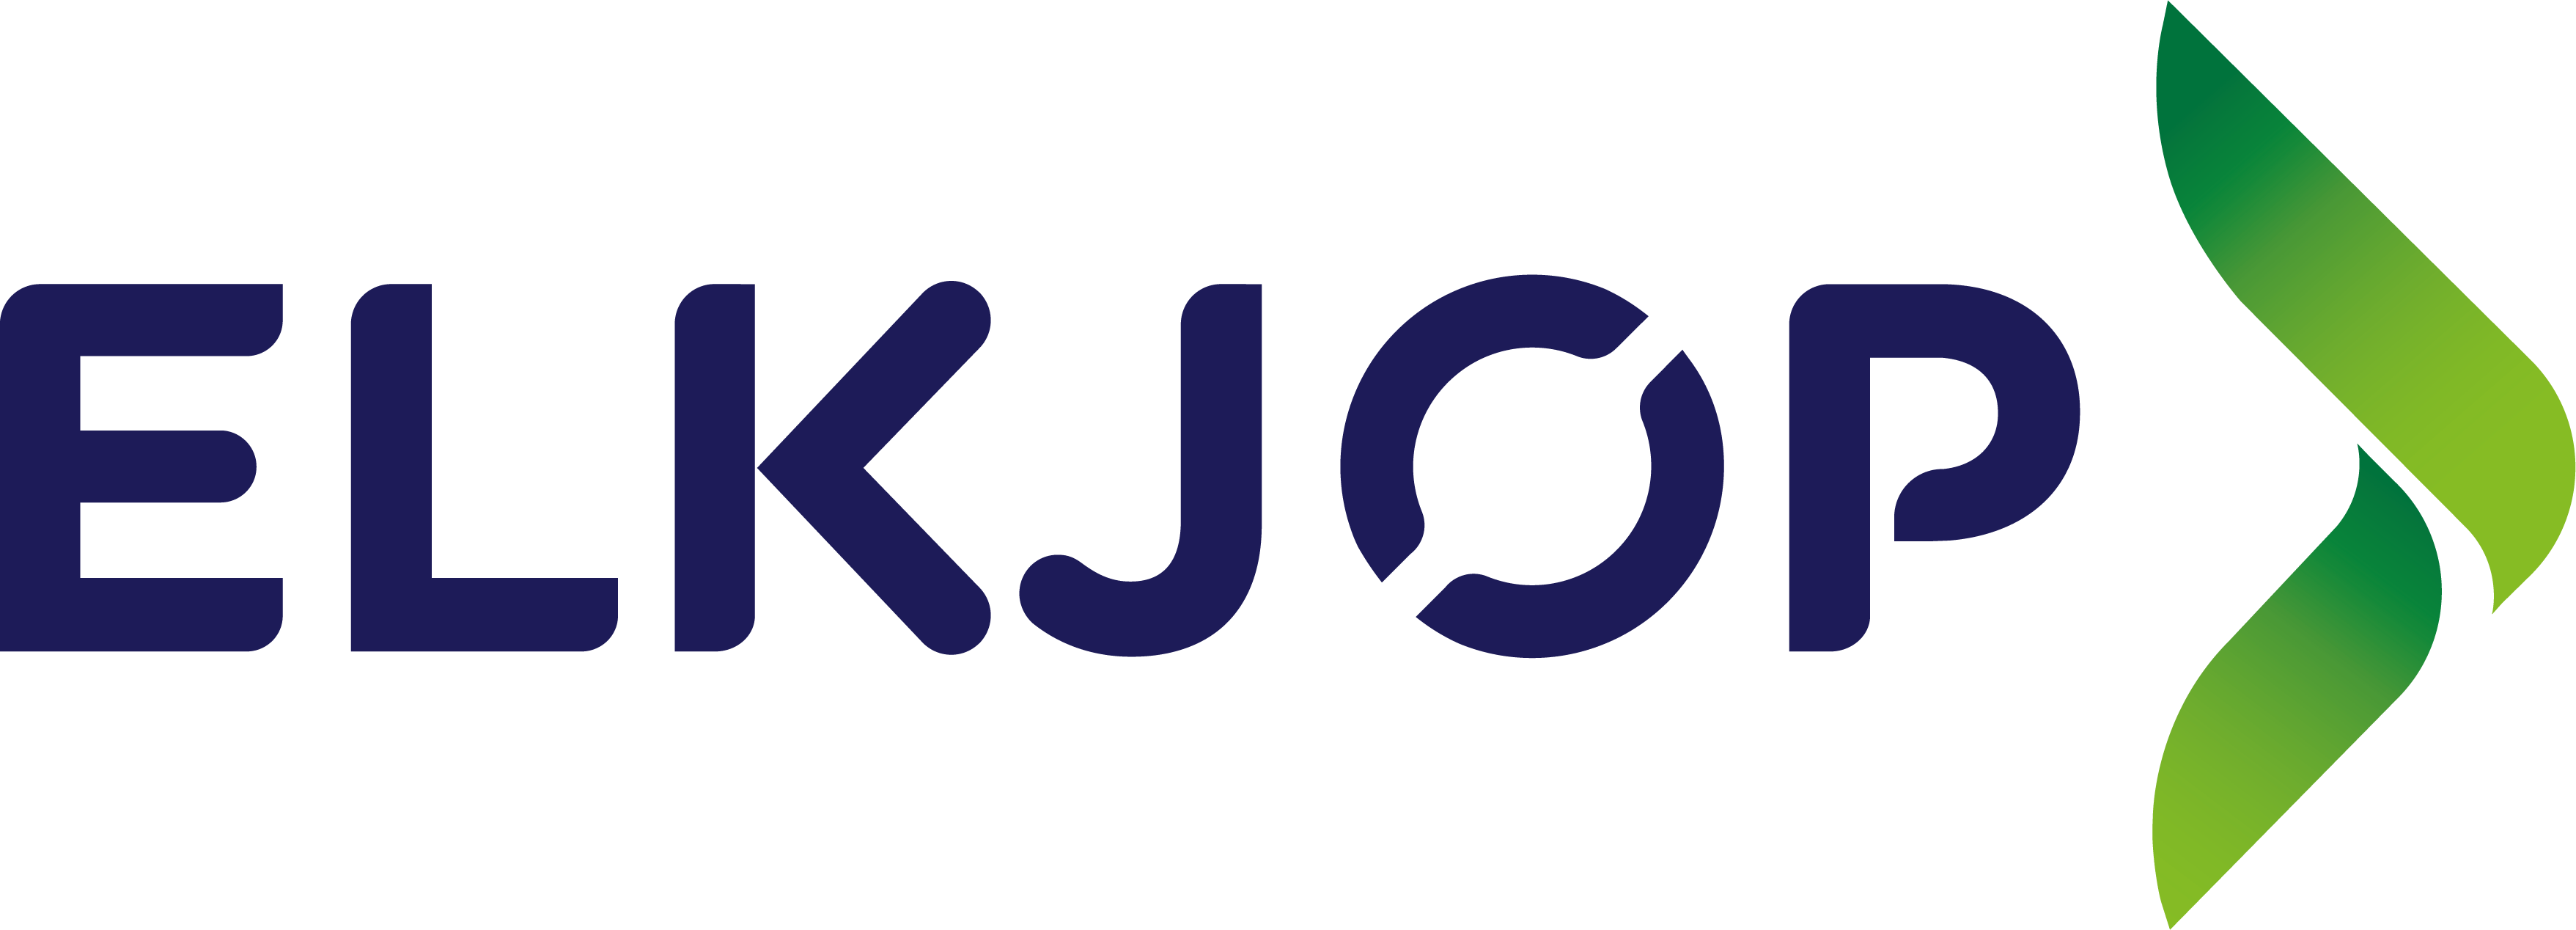 Elkjop logo blue